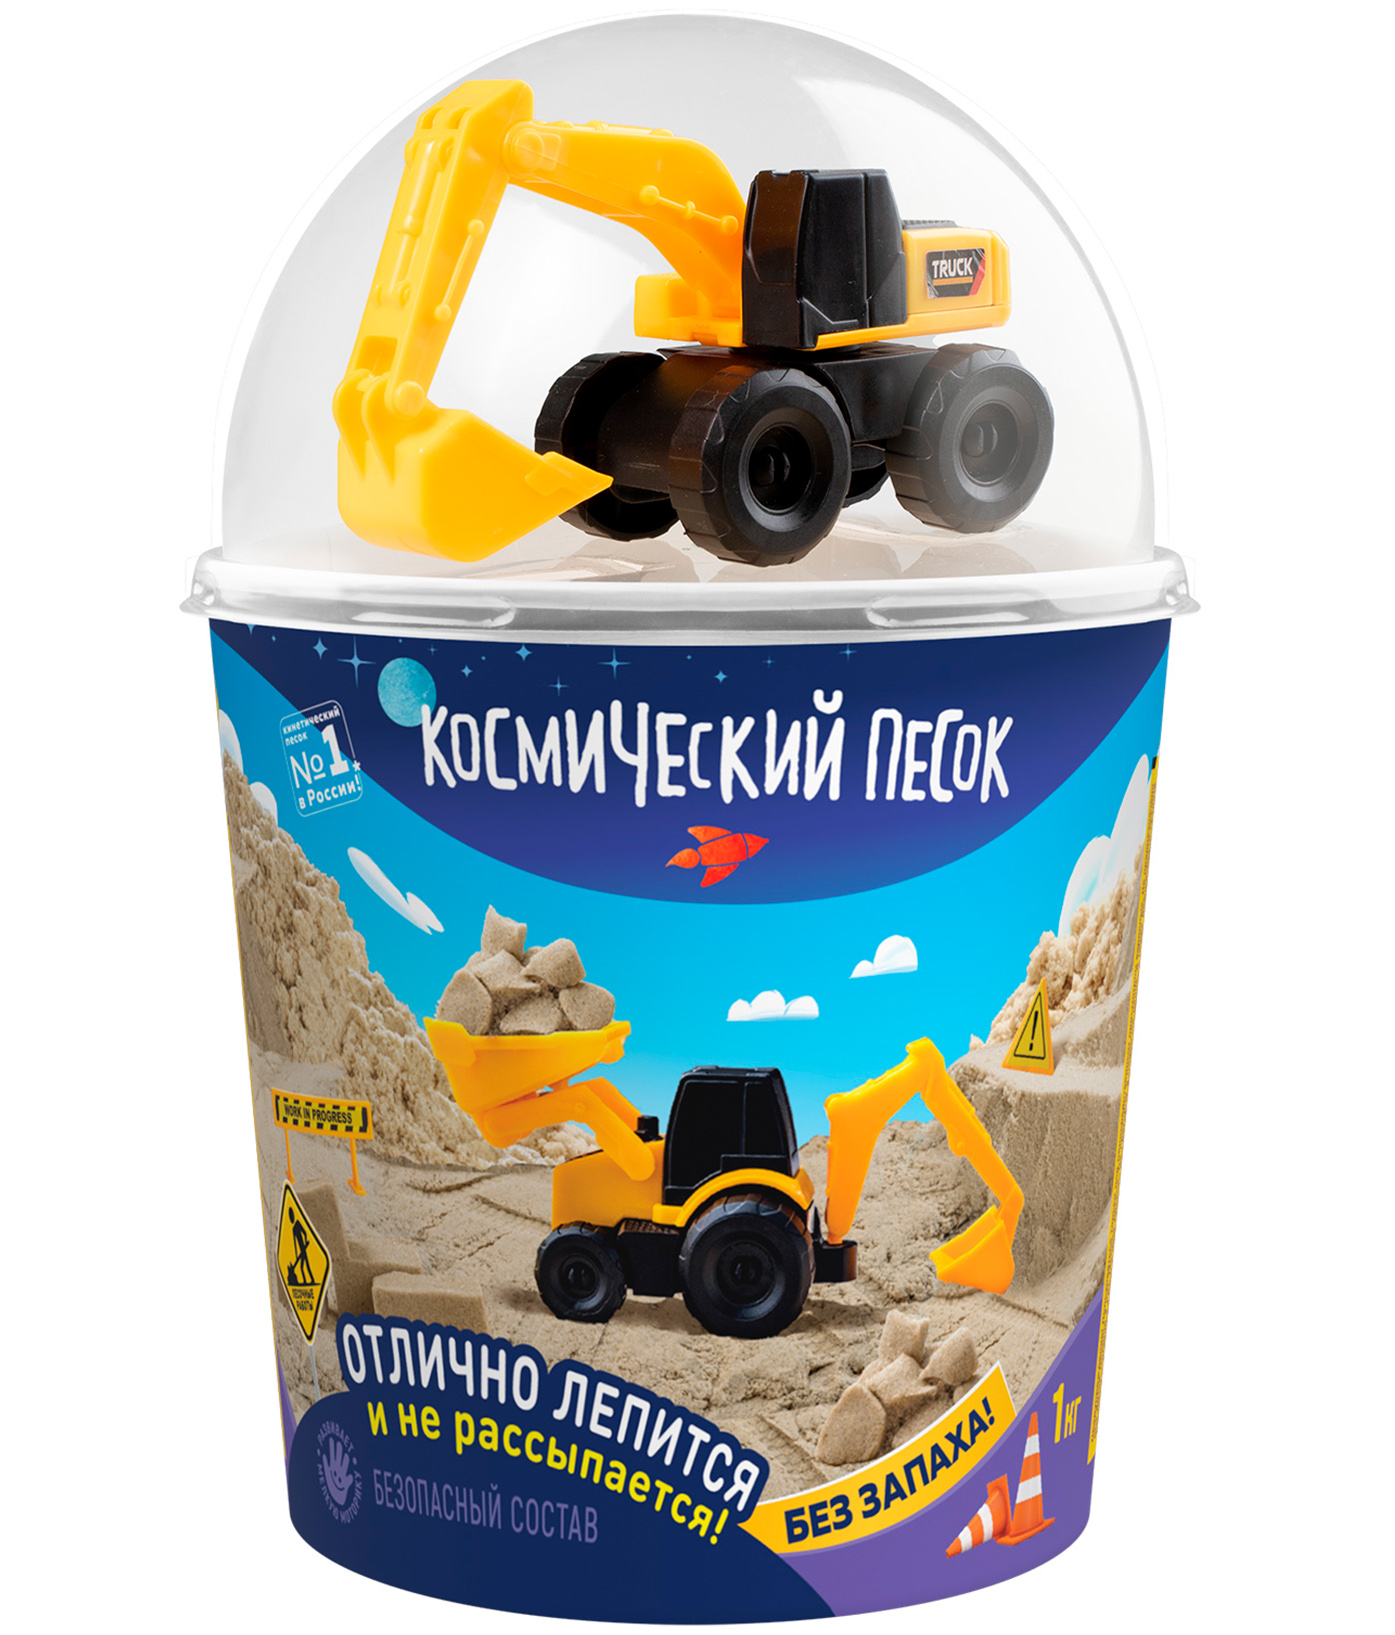 Кинетический песок Космический песок песочный, в наборе с машинкой-экскаватором, с 3 лет